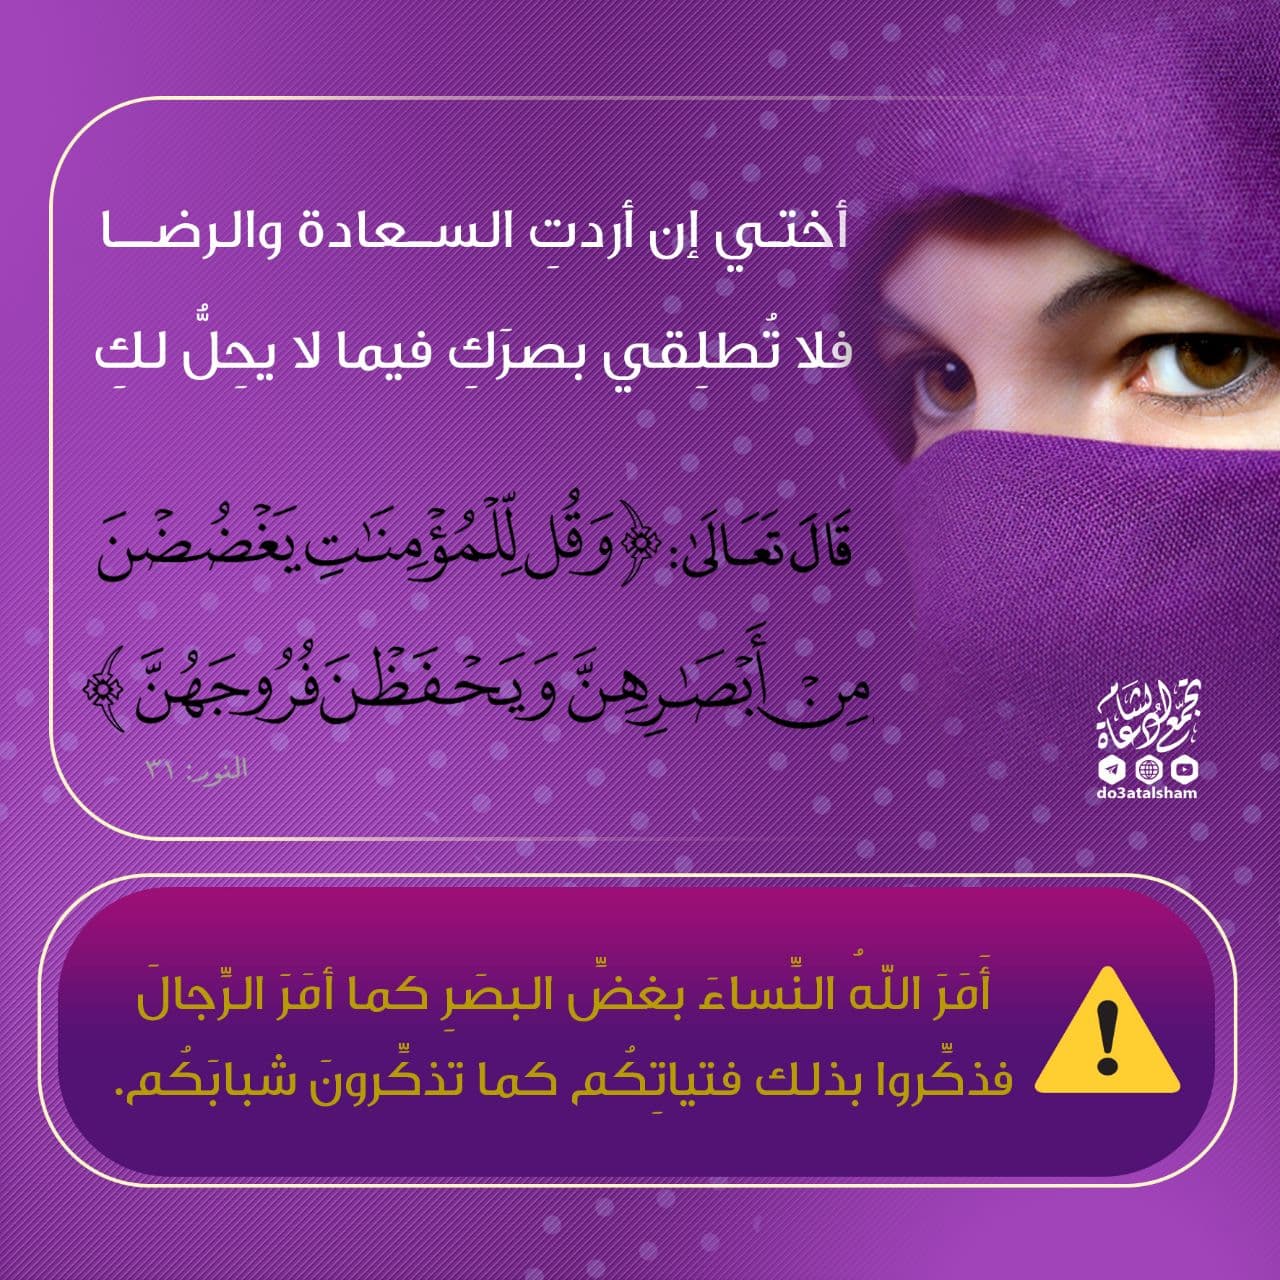 بنت الإسلام - أمر النساء بغض البصر كما الرجال